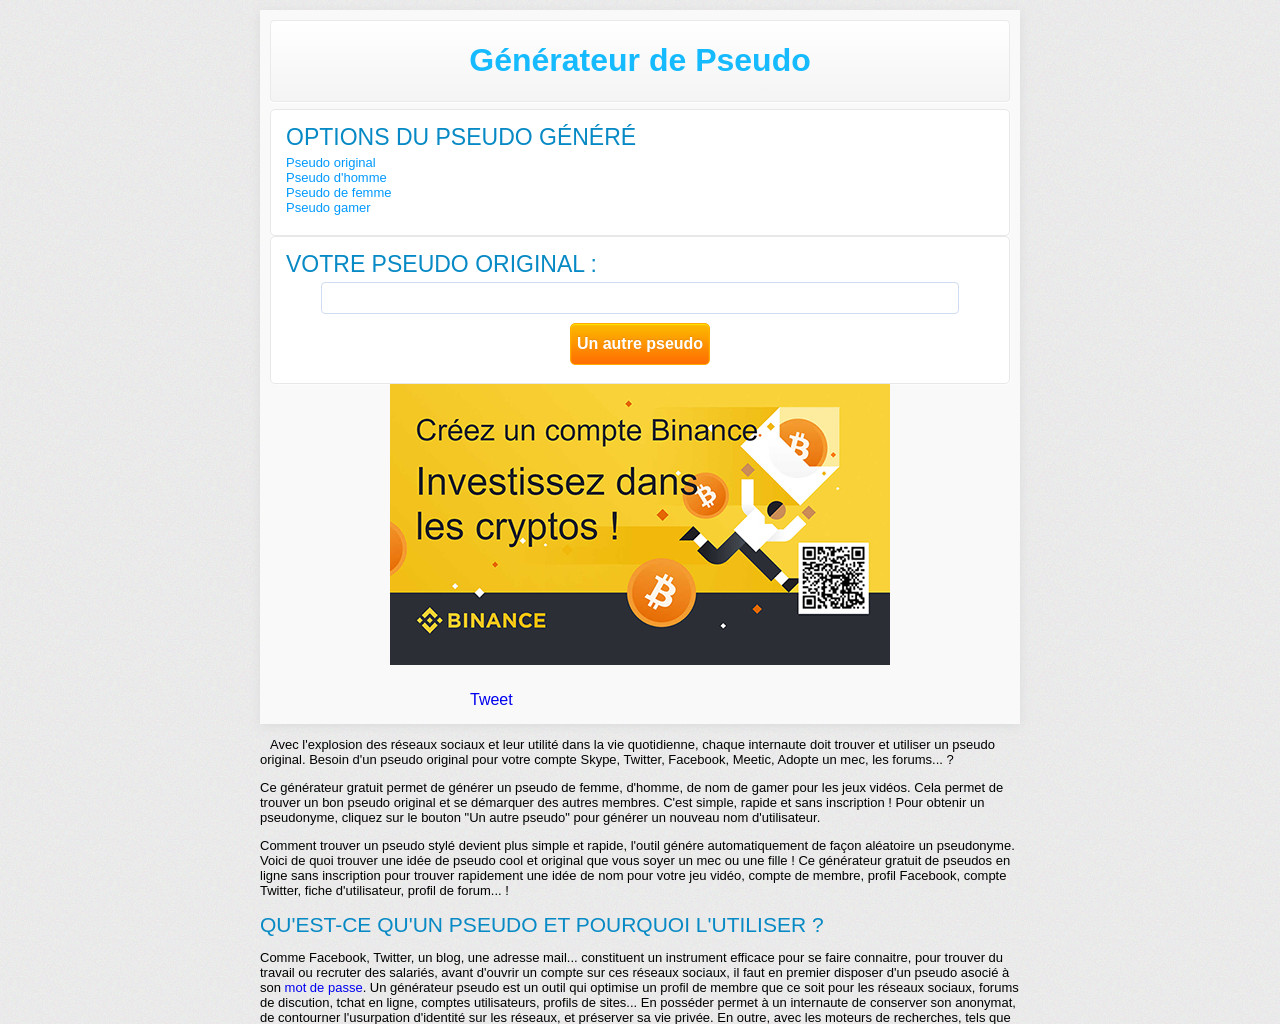 www.generateur-pseudo.com